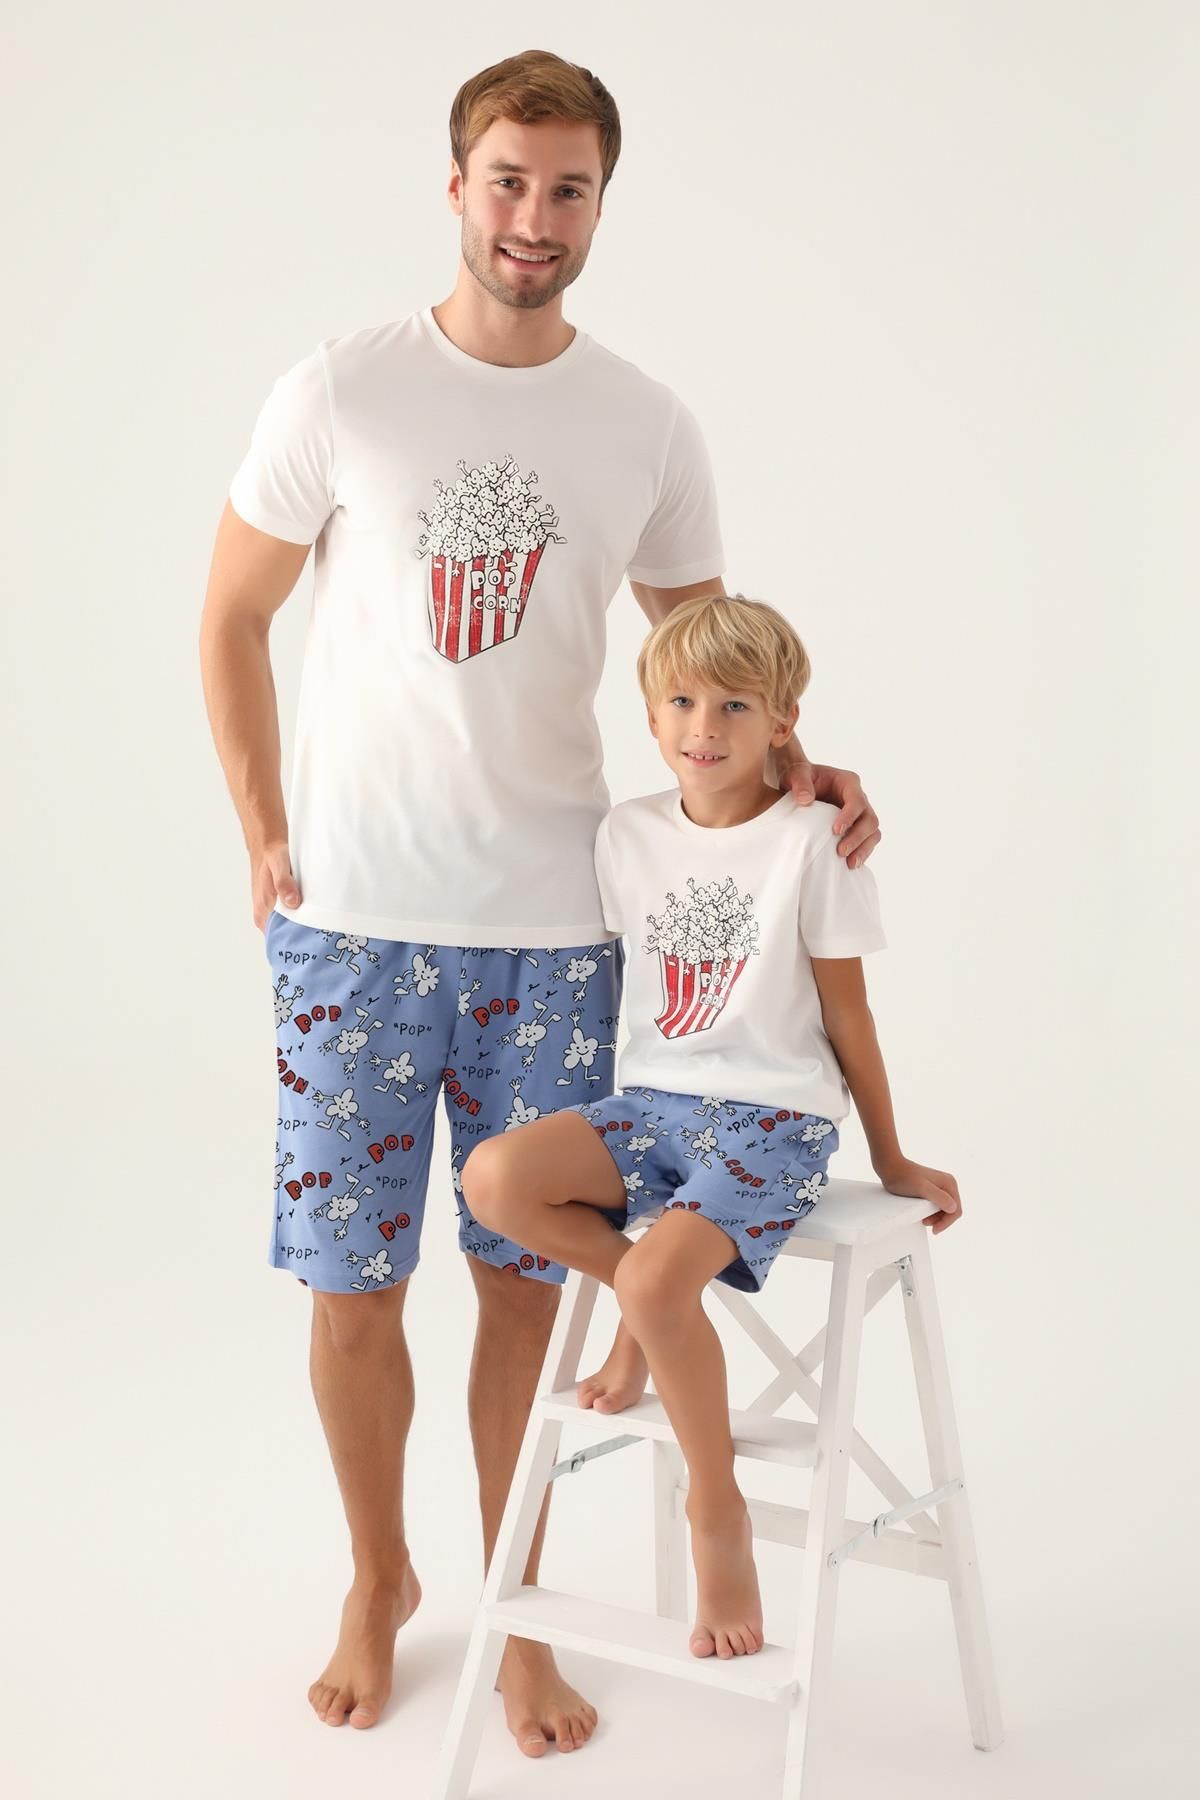 Rolypoly Aile Pijama Takımı, Popcorn Baskılı, %100 Pamuk, (ayrı ayrı fiyatlandırılır)